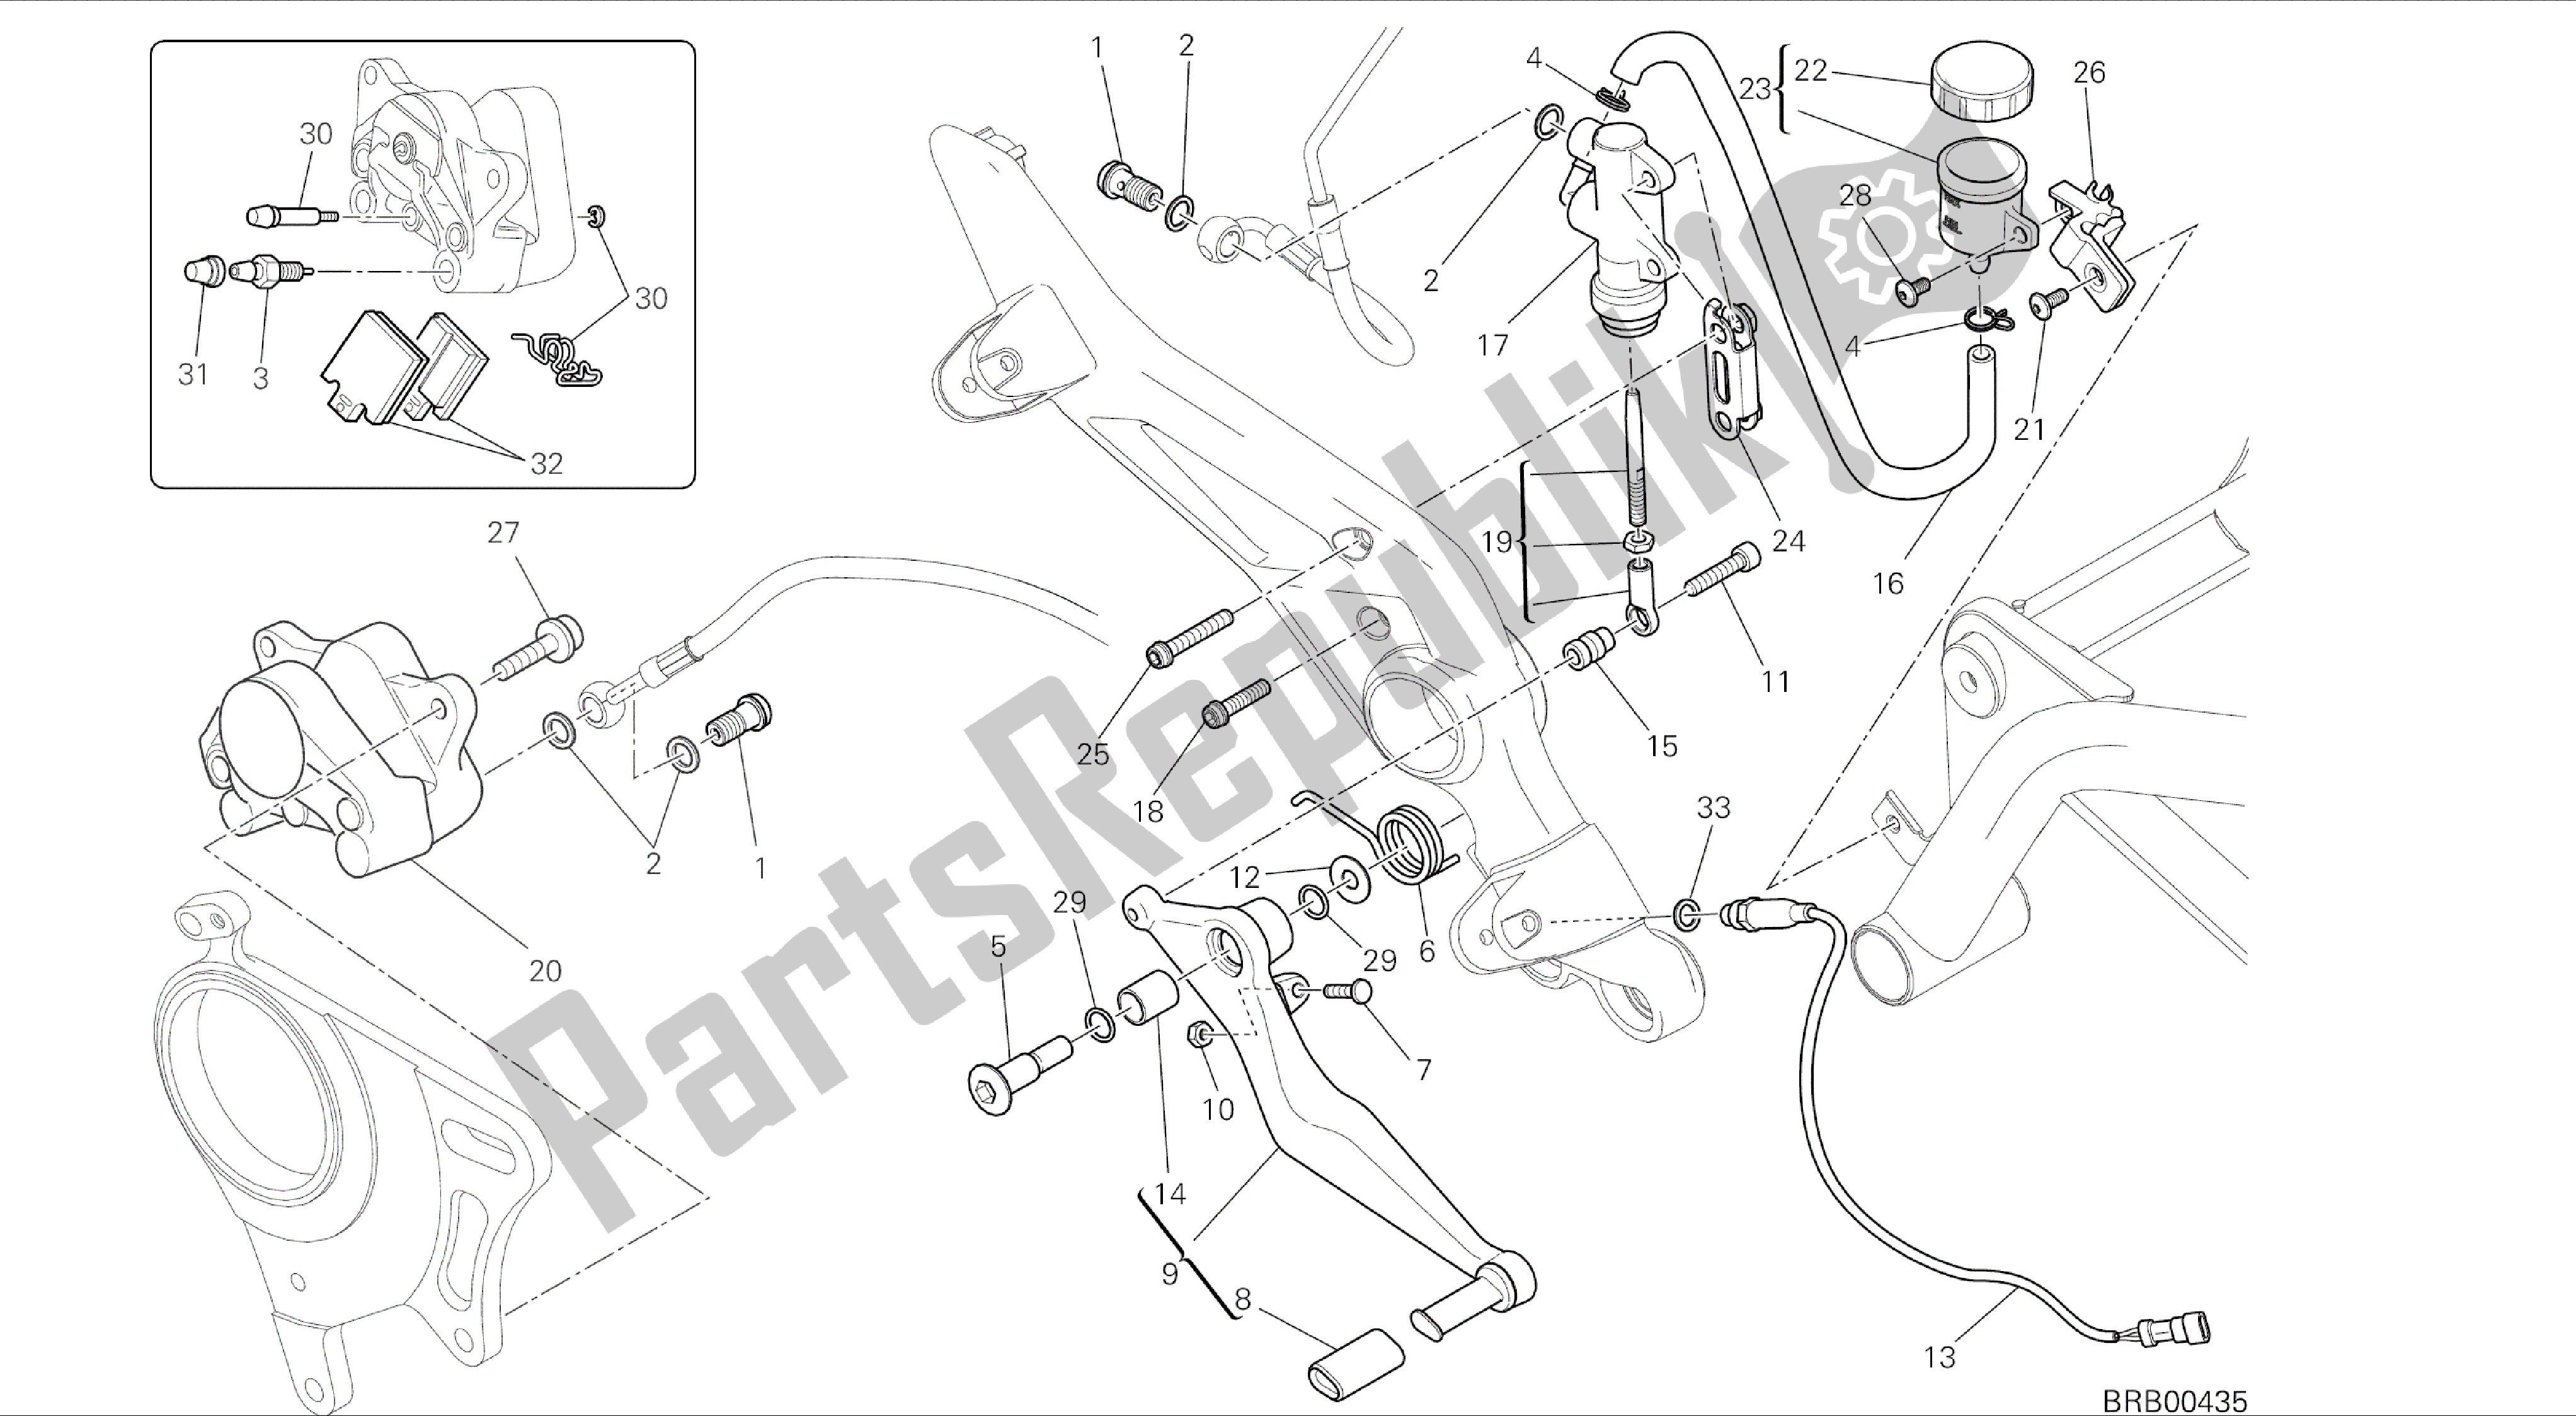 Todas las partes para Dibujo 025 - Sistema De Freno Trasero [mod: Hym; Xst: Marco De Grupo Aus, Chn, Eur, Fra, Jap, Tha, Twn] de Ducati Hypermotard 821 2014